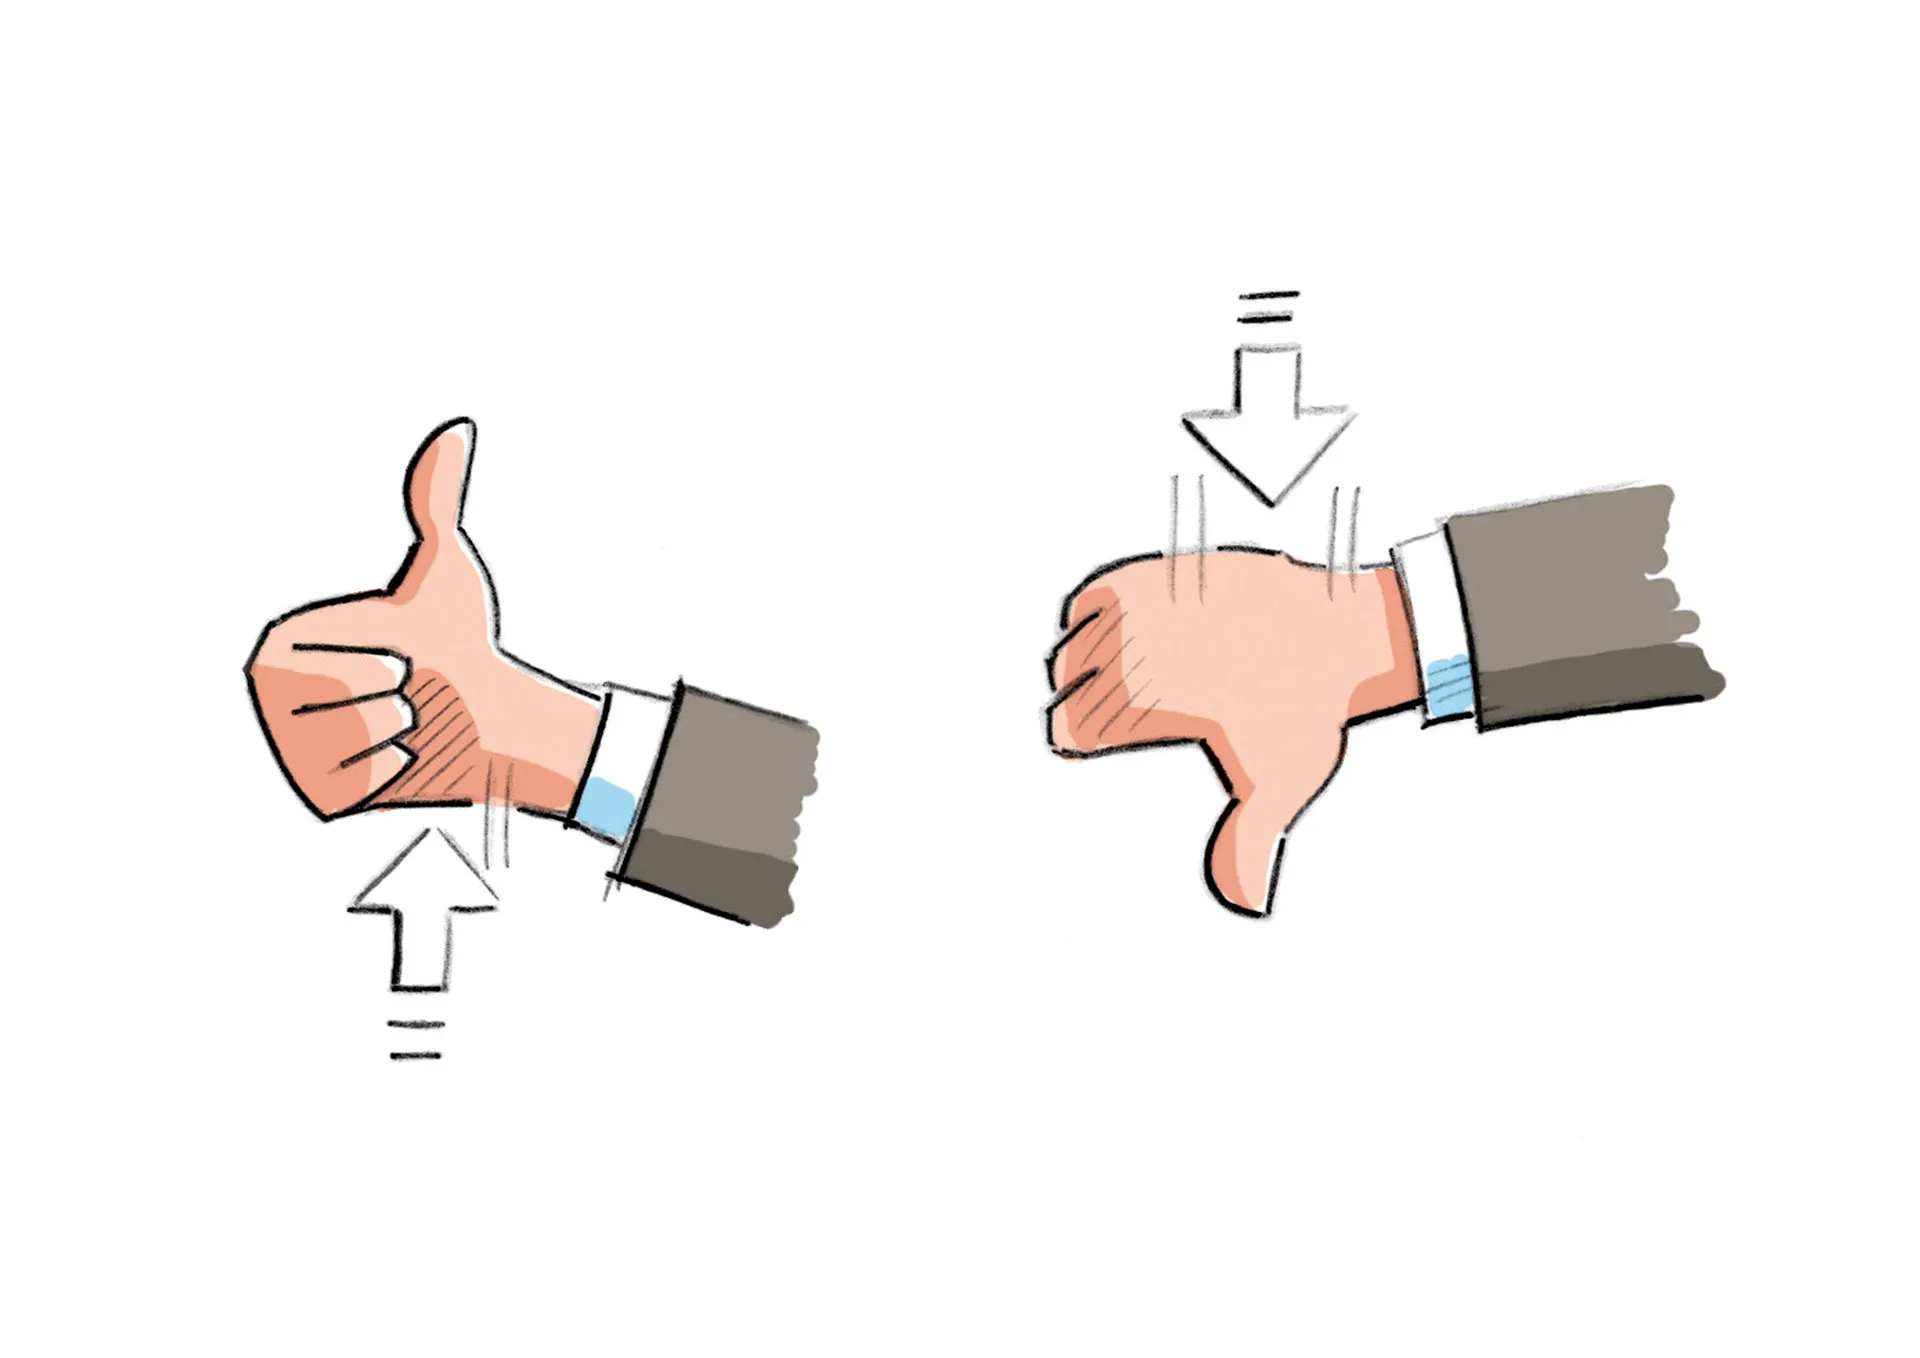 Bild von einer Hand mit Daumen nach oben und einer Hand mit Daumen nach unten.